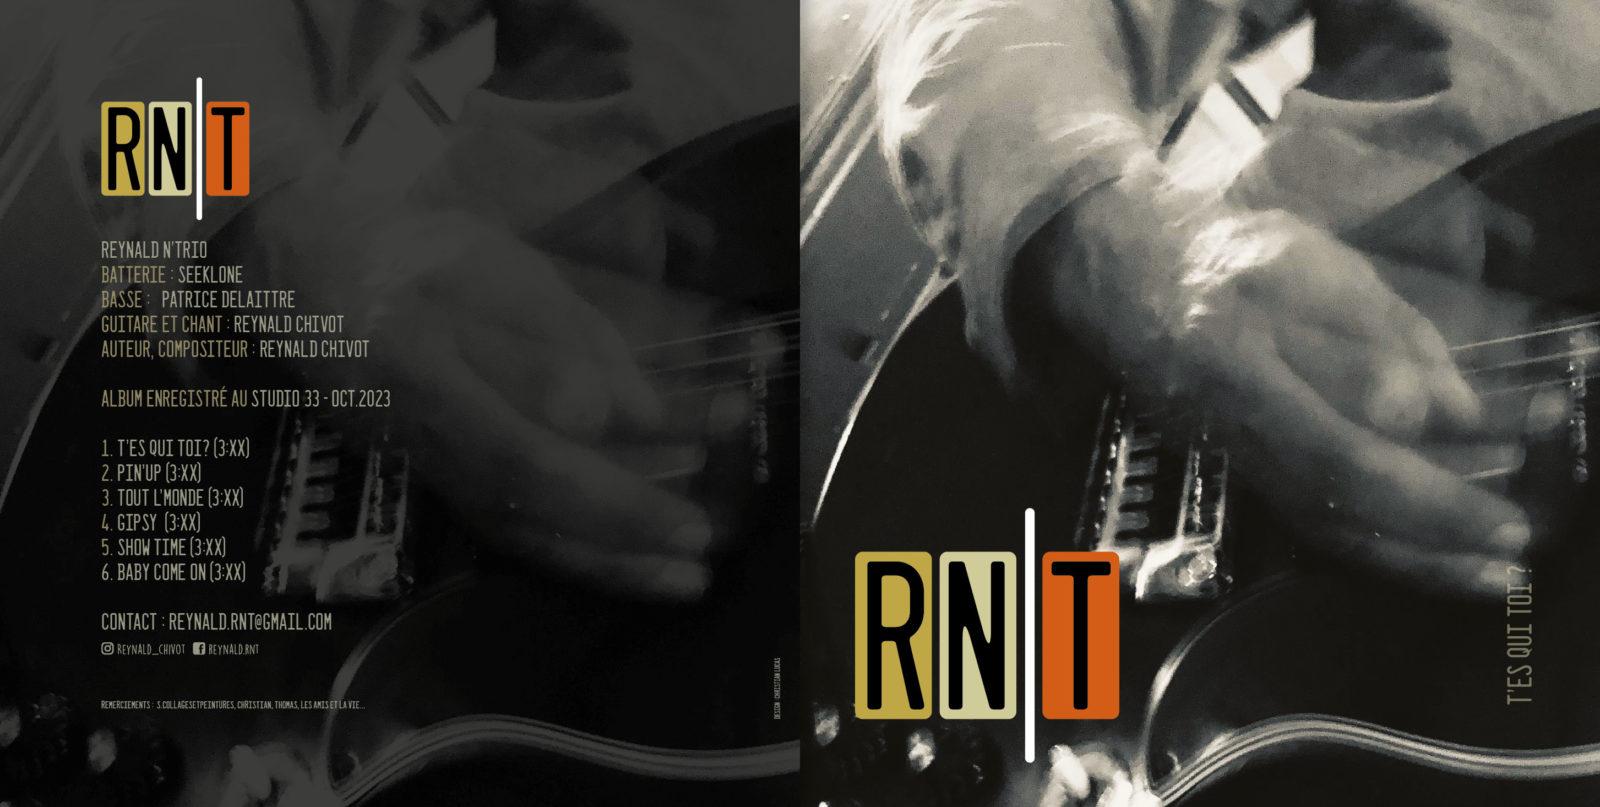 Image de RN|T Reynald n’trio